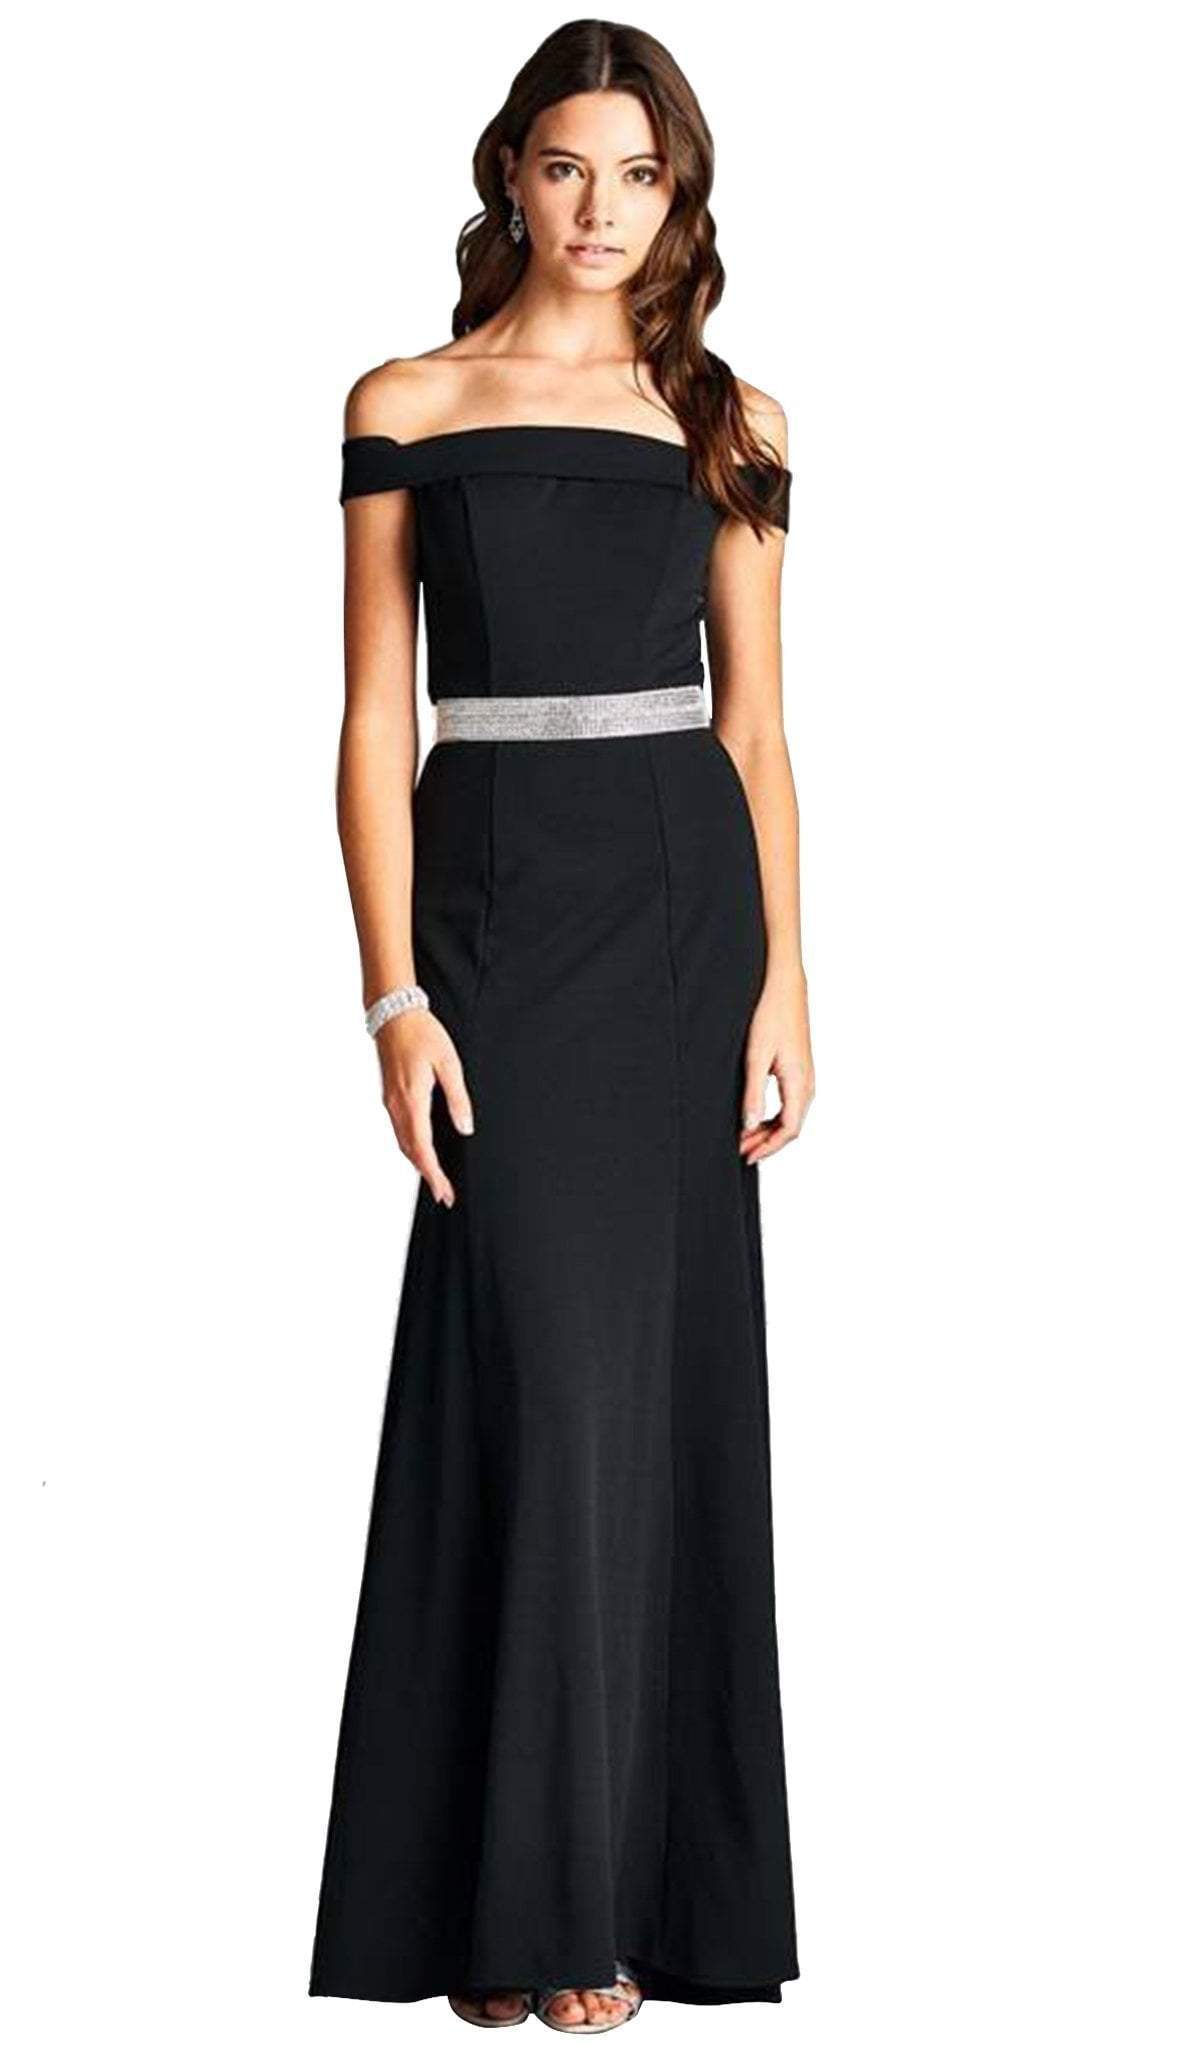 Aspeed Design - Off Shoulder Long Formal Evening Dress
